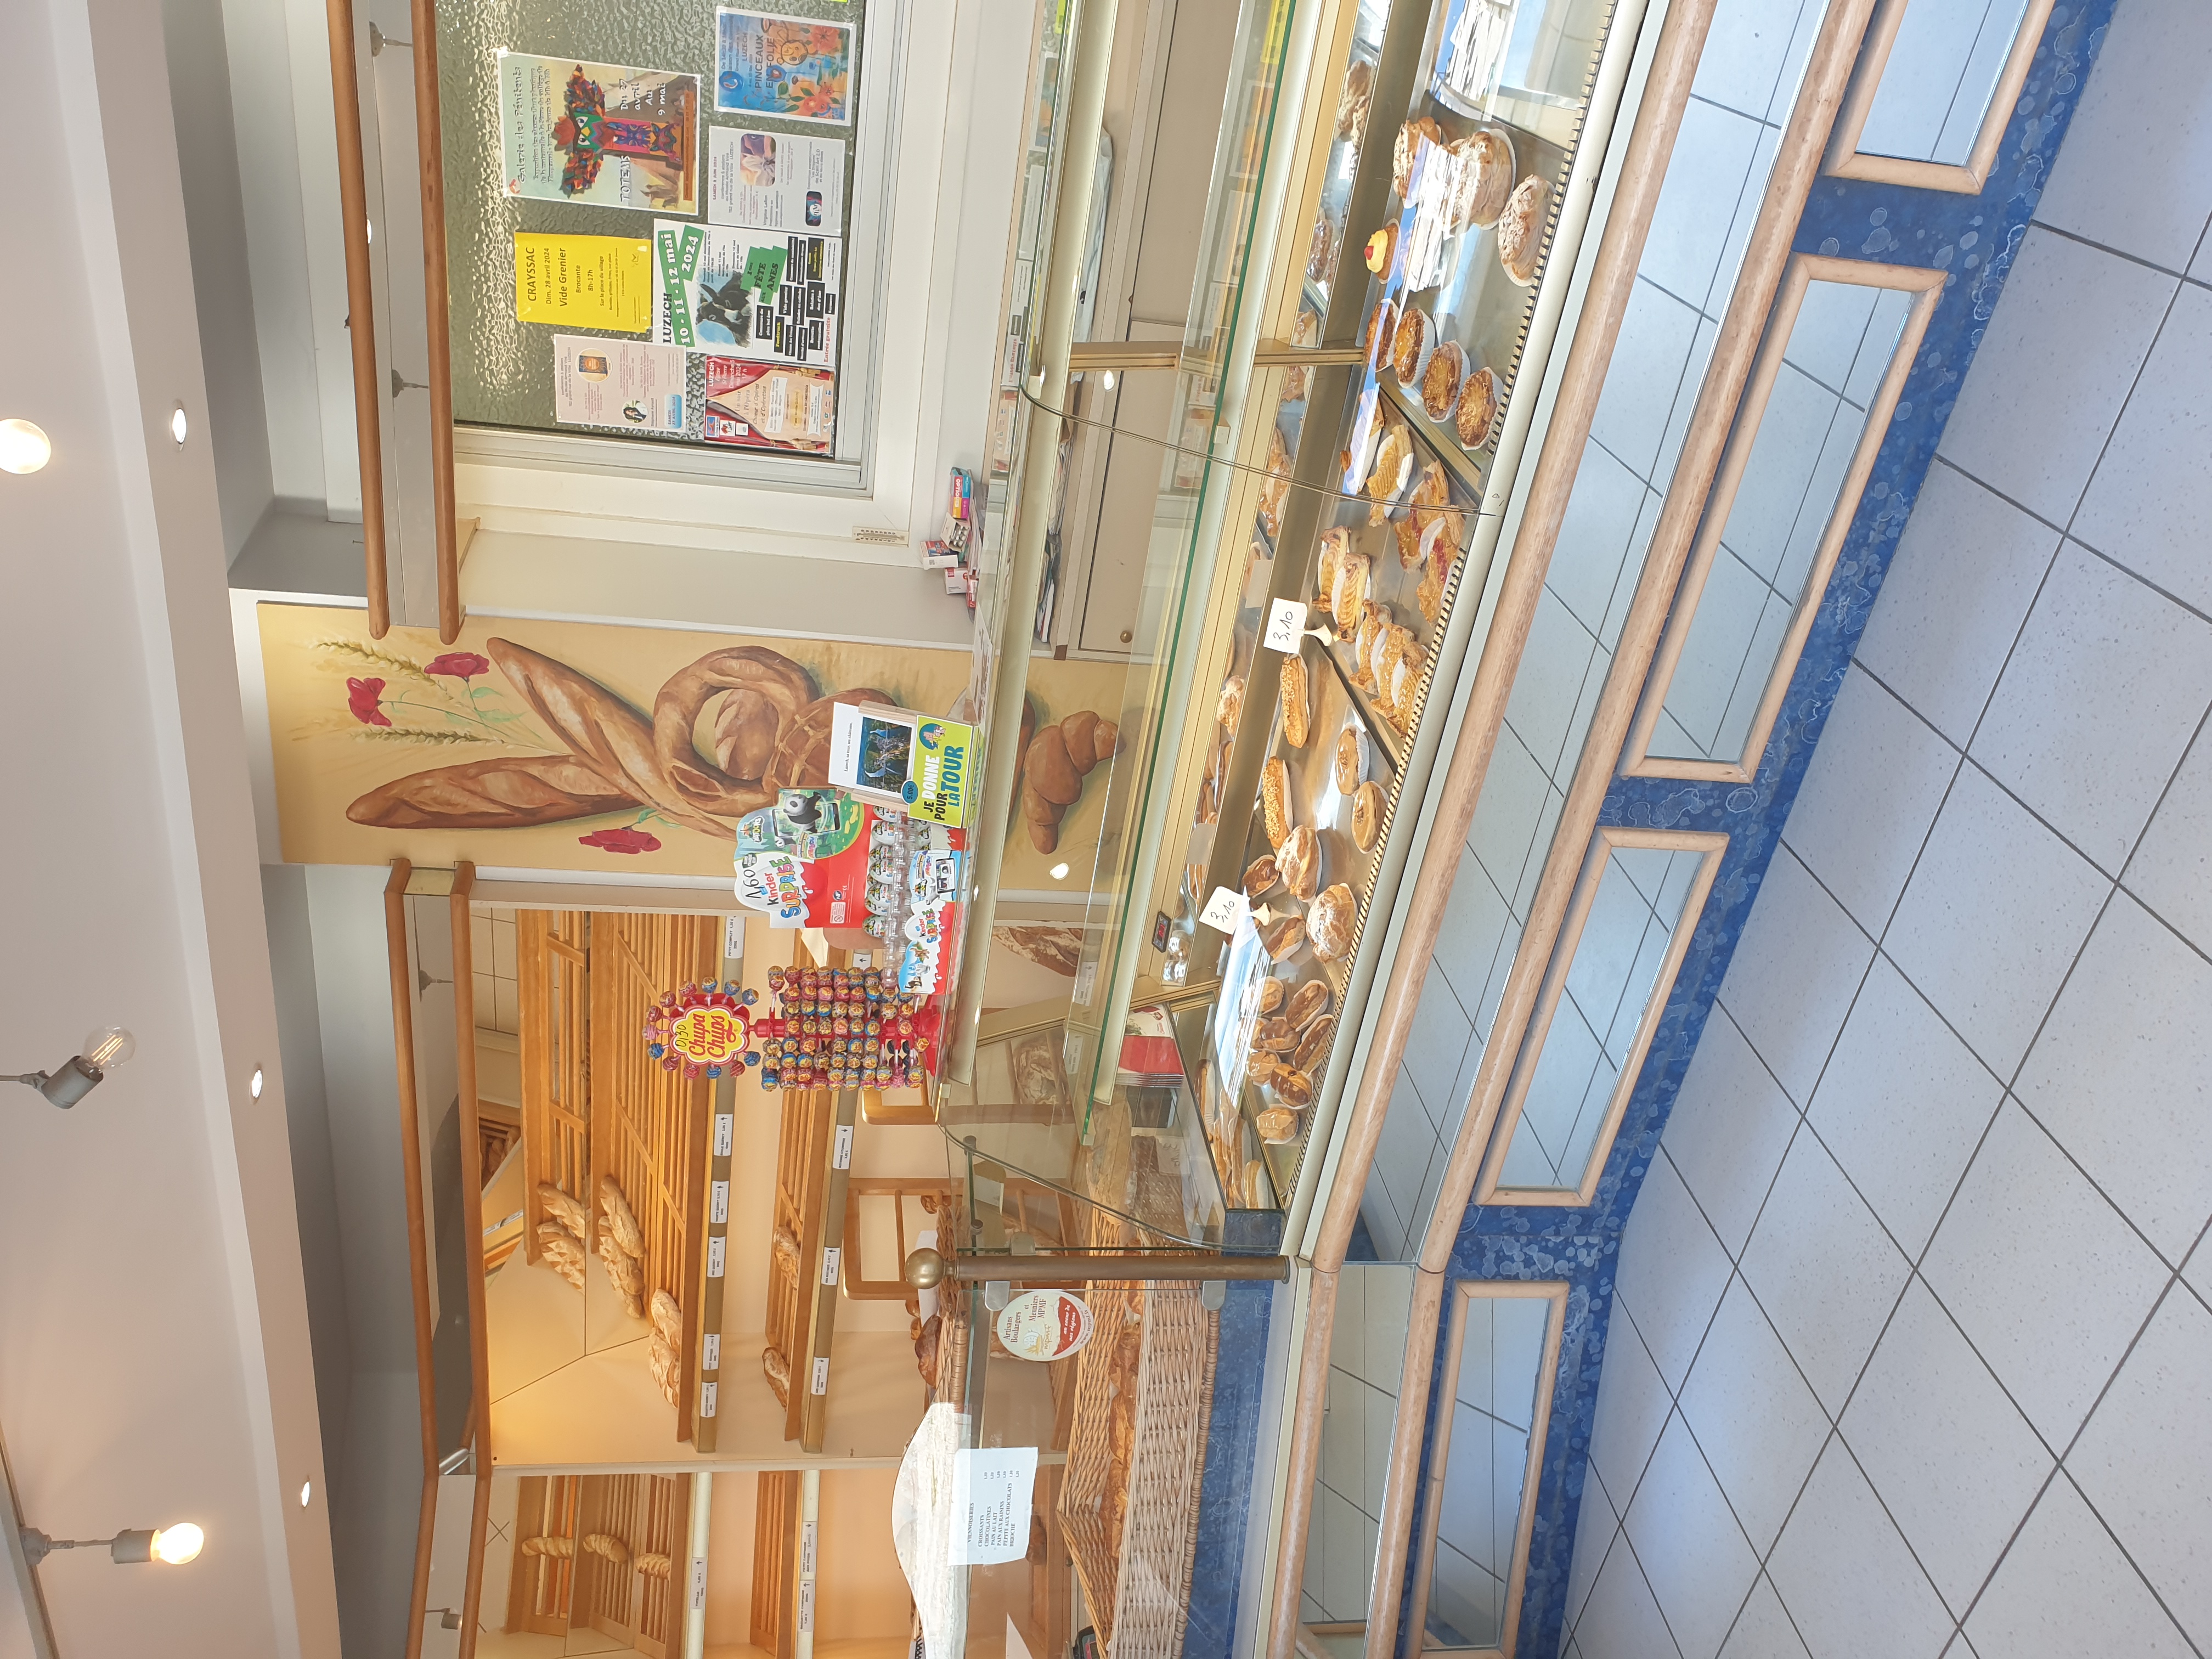 A vendre Boulangerie Pâtisserie à Luzech,  en plein centre du village,  très bien placé. Pour plus d'informations n'hésitez à nous contacter au 06 77 39 79 57. 
Pas sérieux s'abstenir.